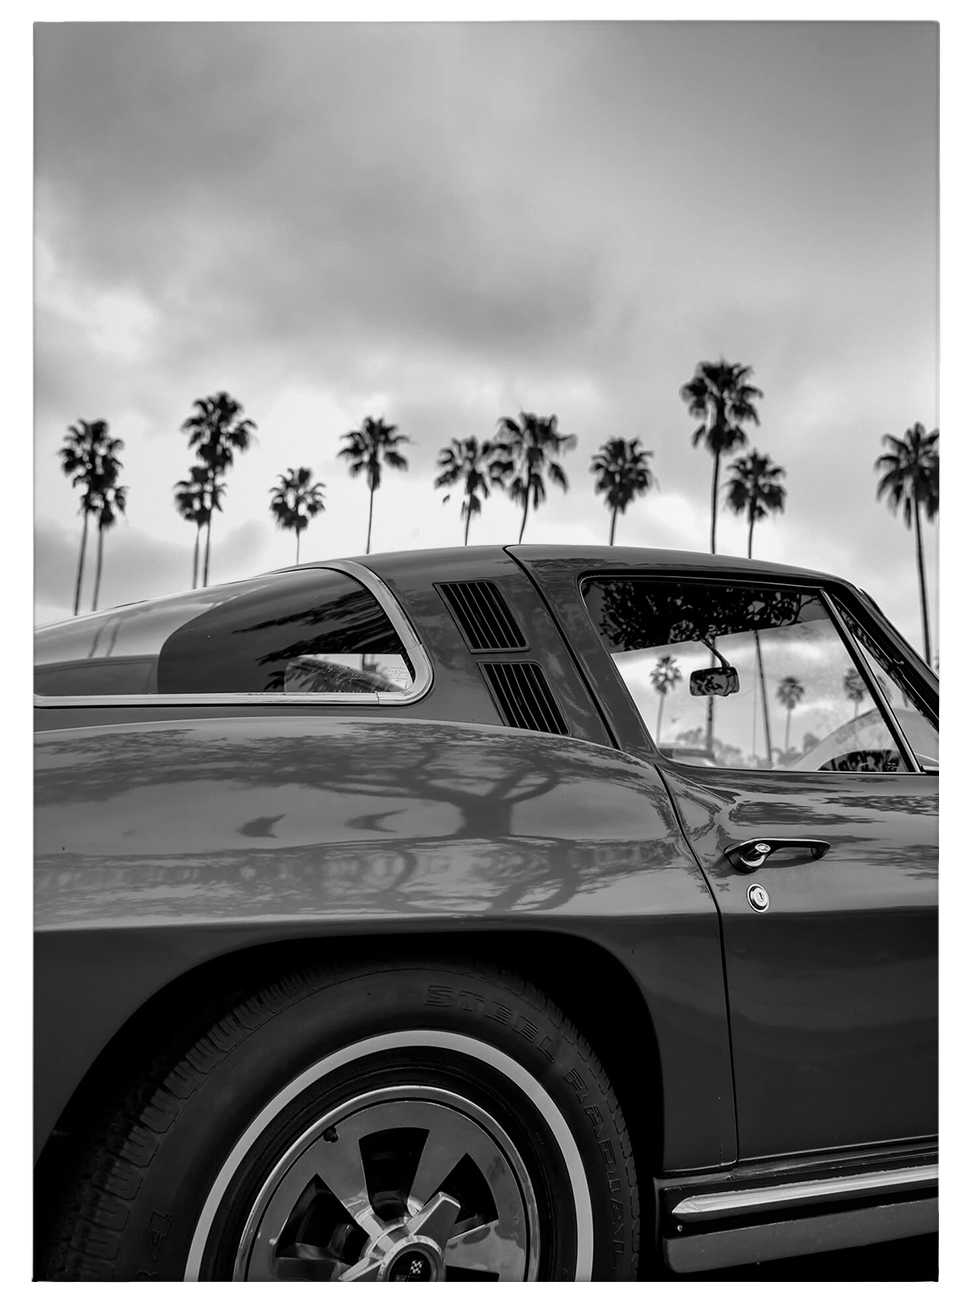             Schwarz-Weiß Leinwandbild California Vintage Hochformat – 0,50 m x 0,70 m
        